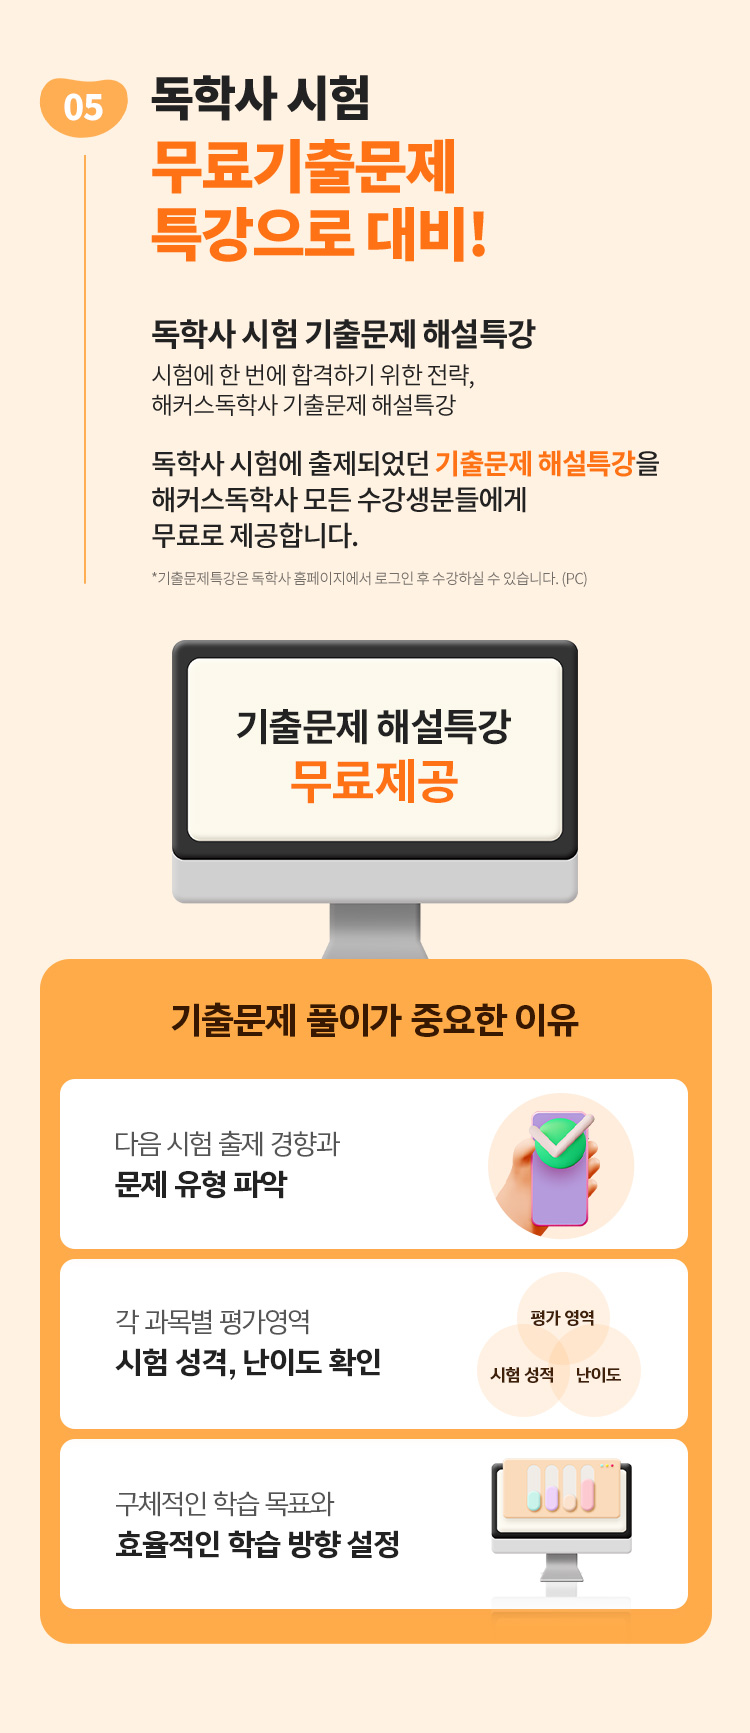 5. 독학사 시험 무료기출문제 특강으로 대비!